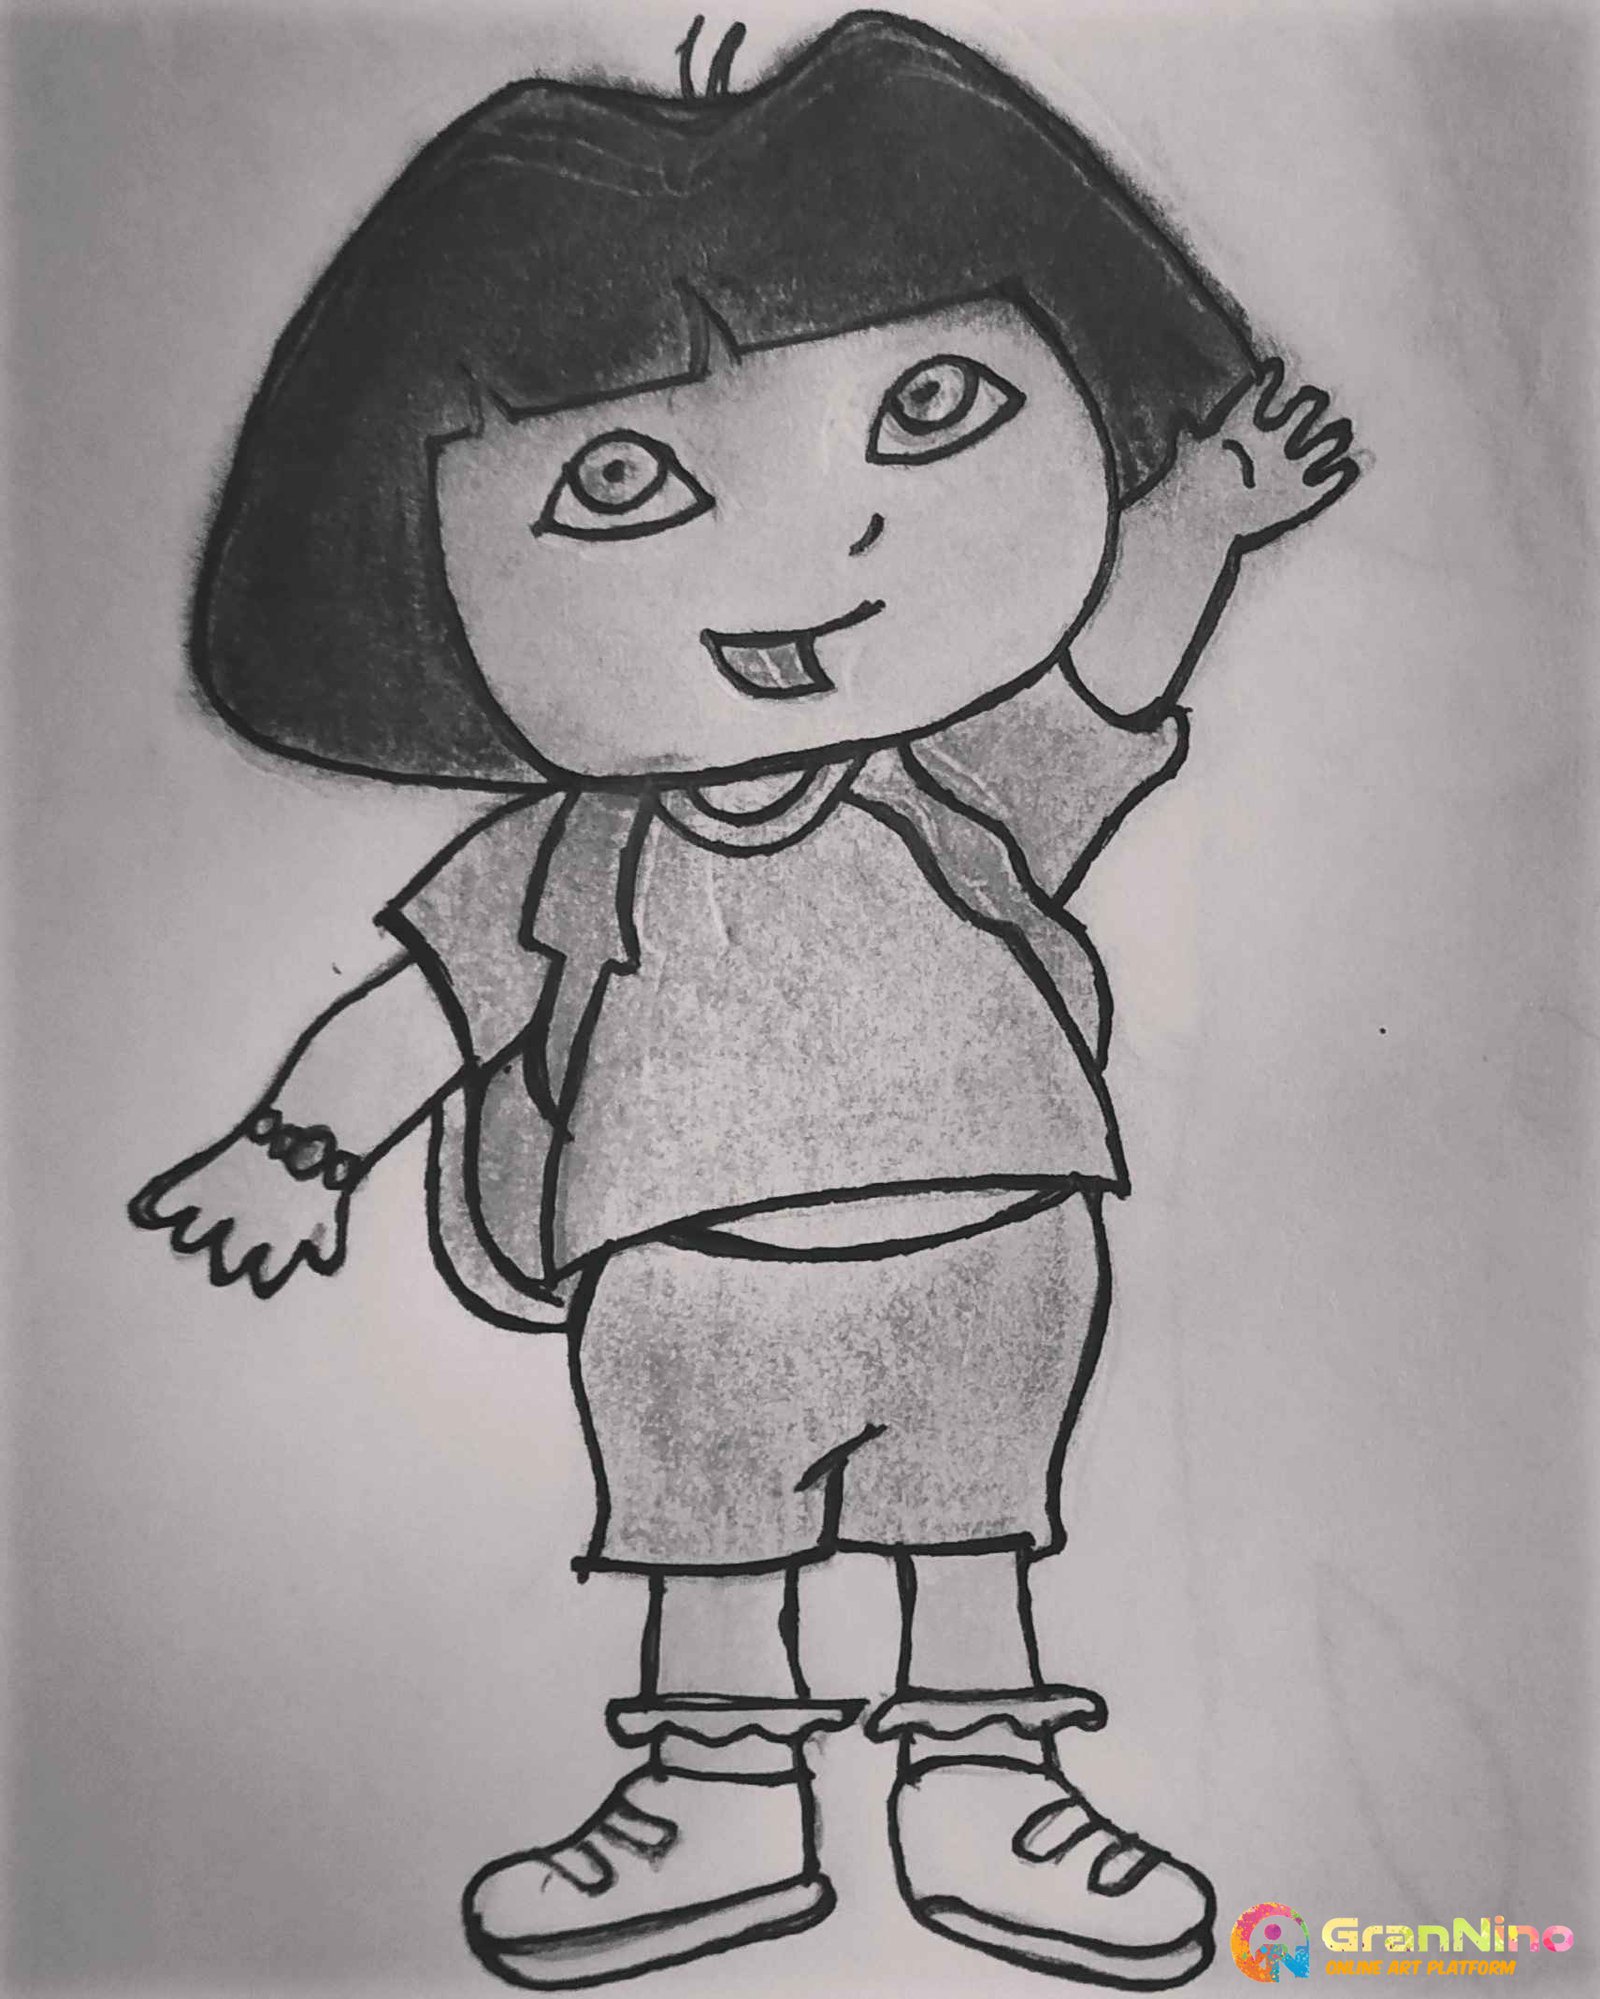 How to Draw Dora | Dora the explorer - YouTube